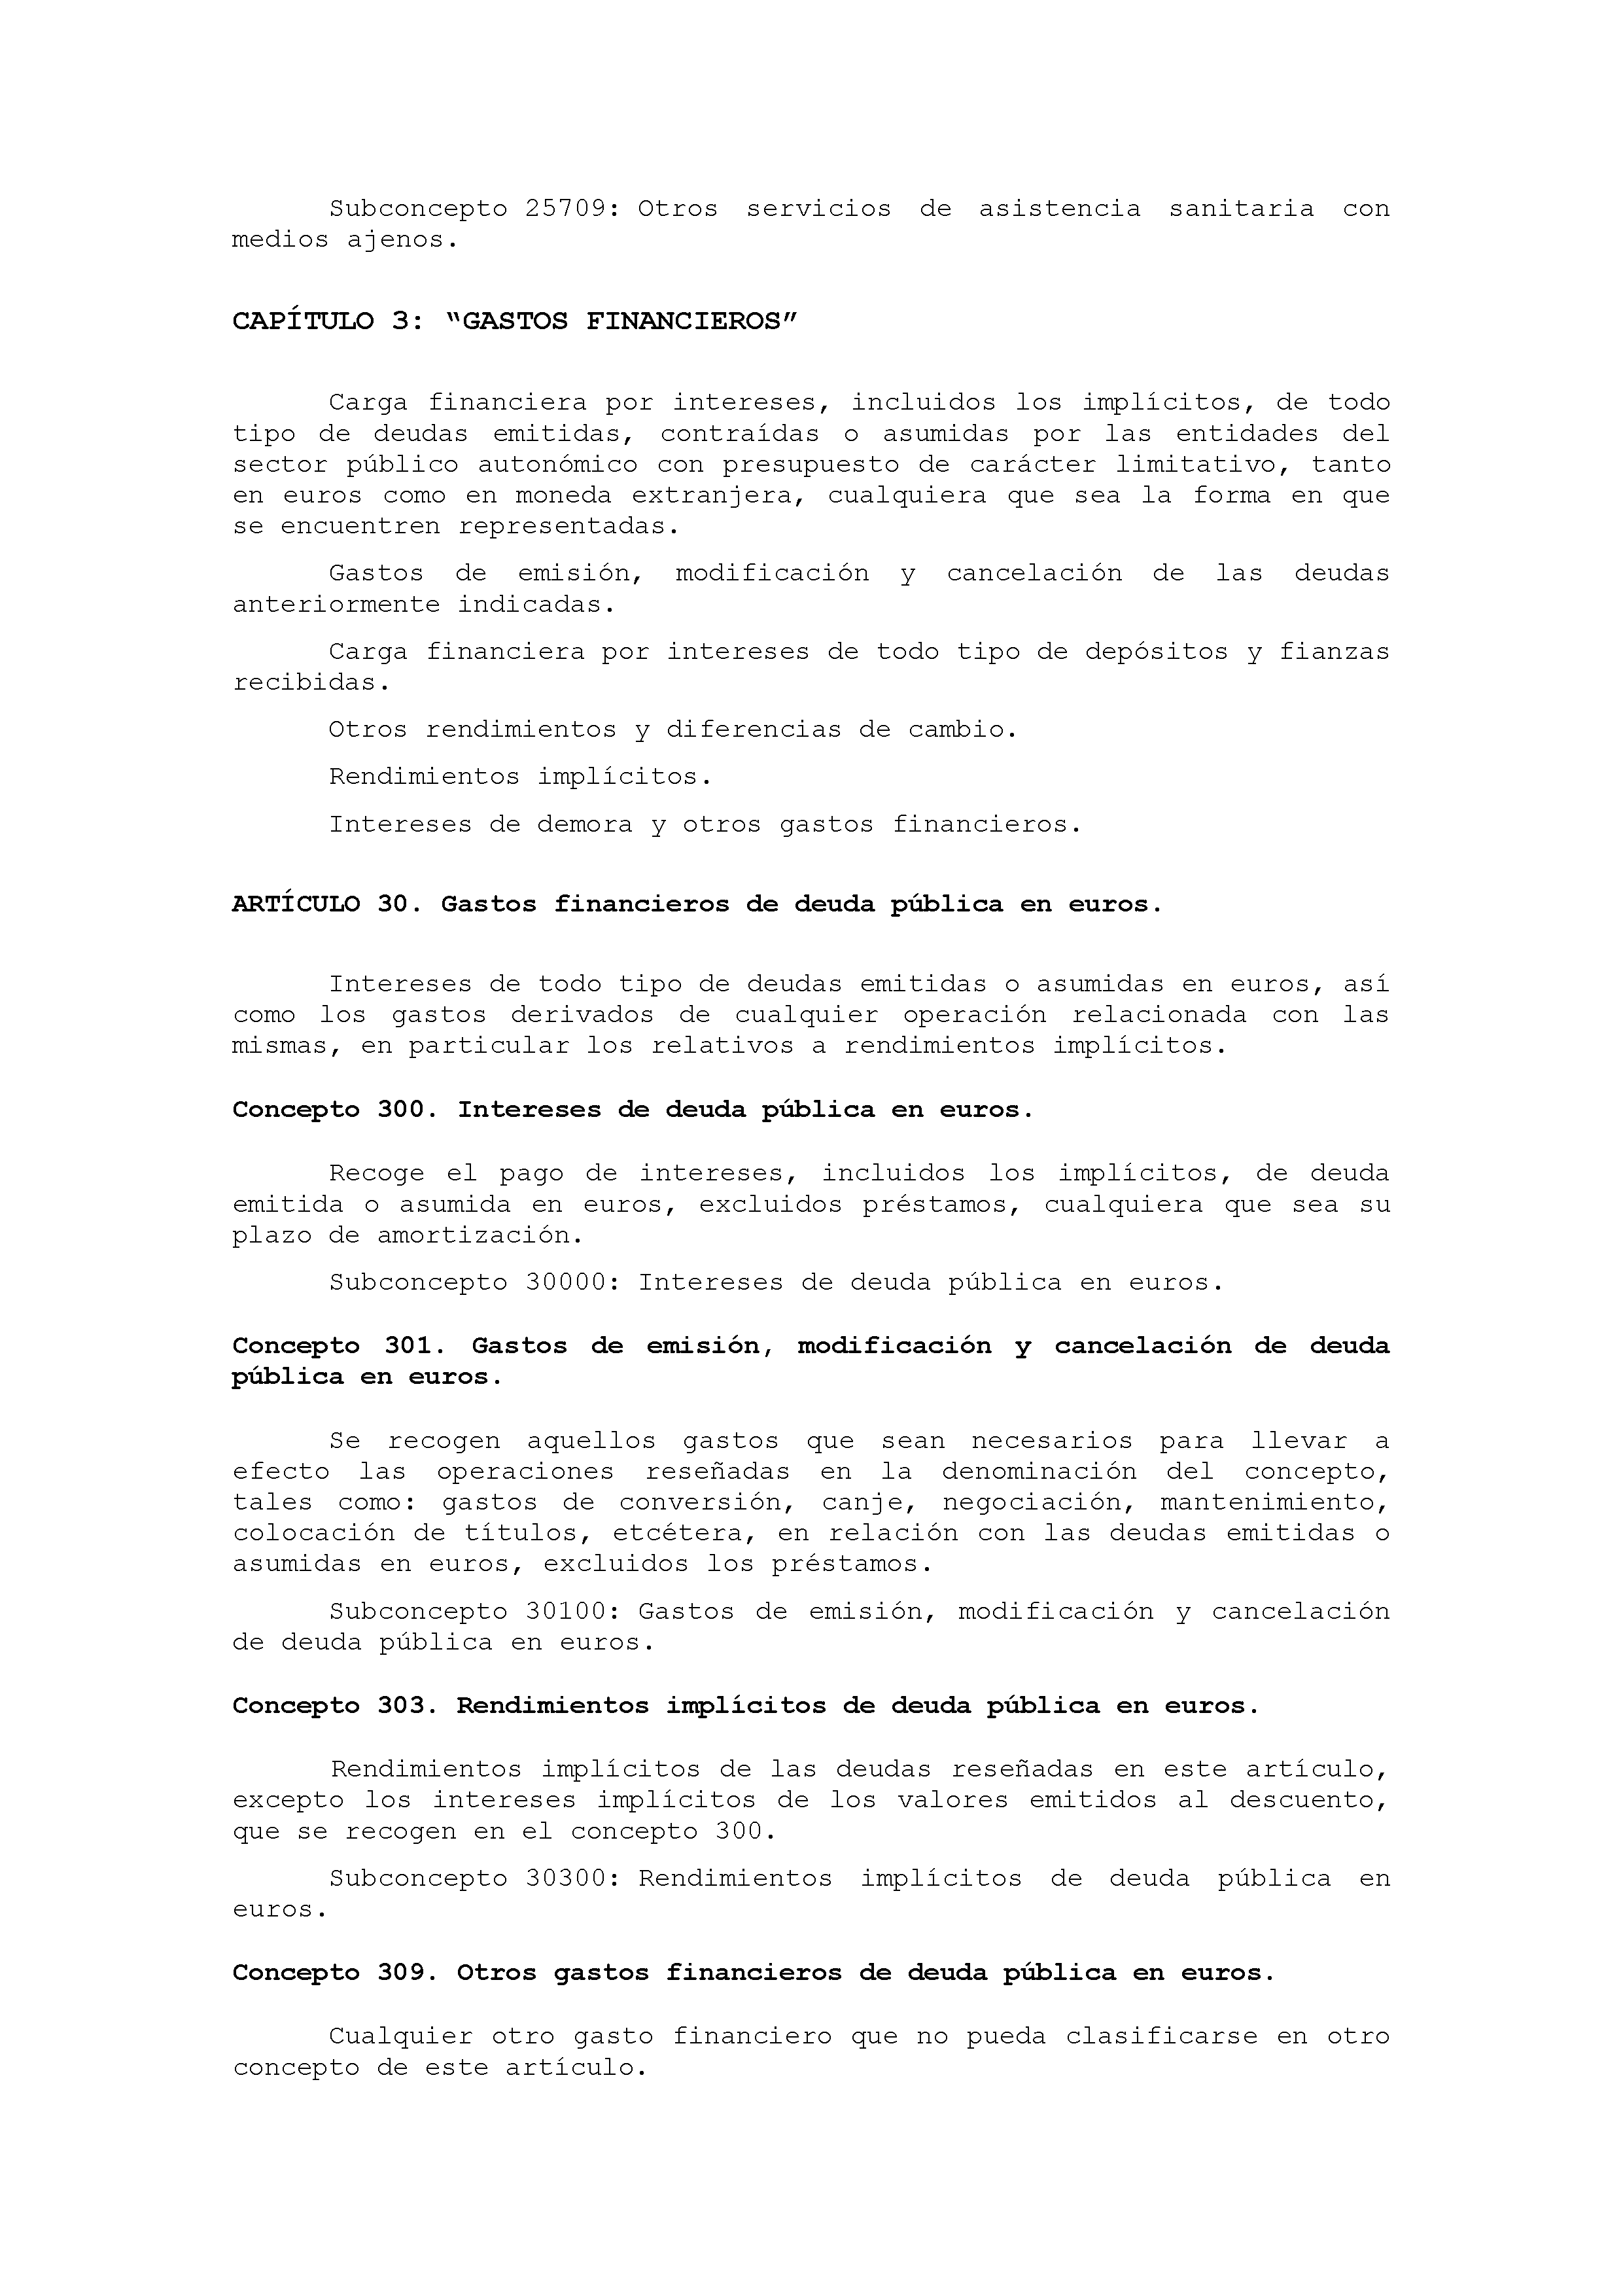 ANEXO IX CÓDIGO DE LA CLASIFICACIÓN ECONÓMICA DE LOS GASTOS PÚBLICOS Pag 27